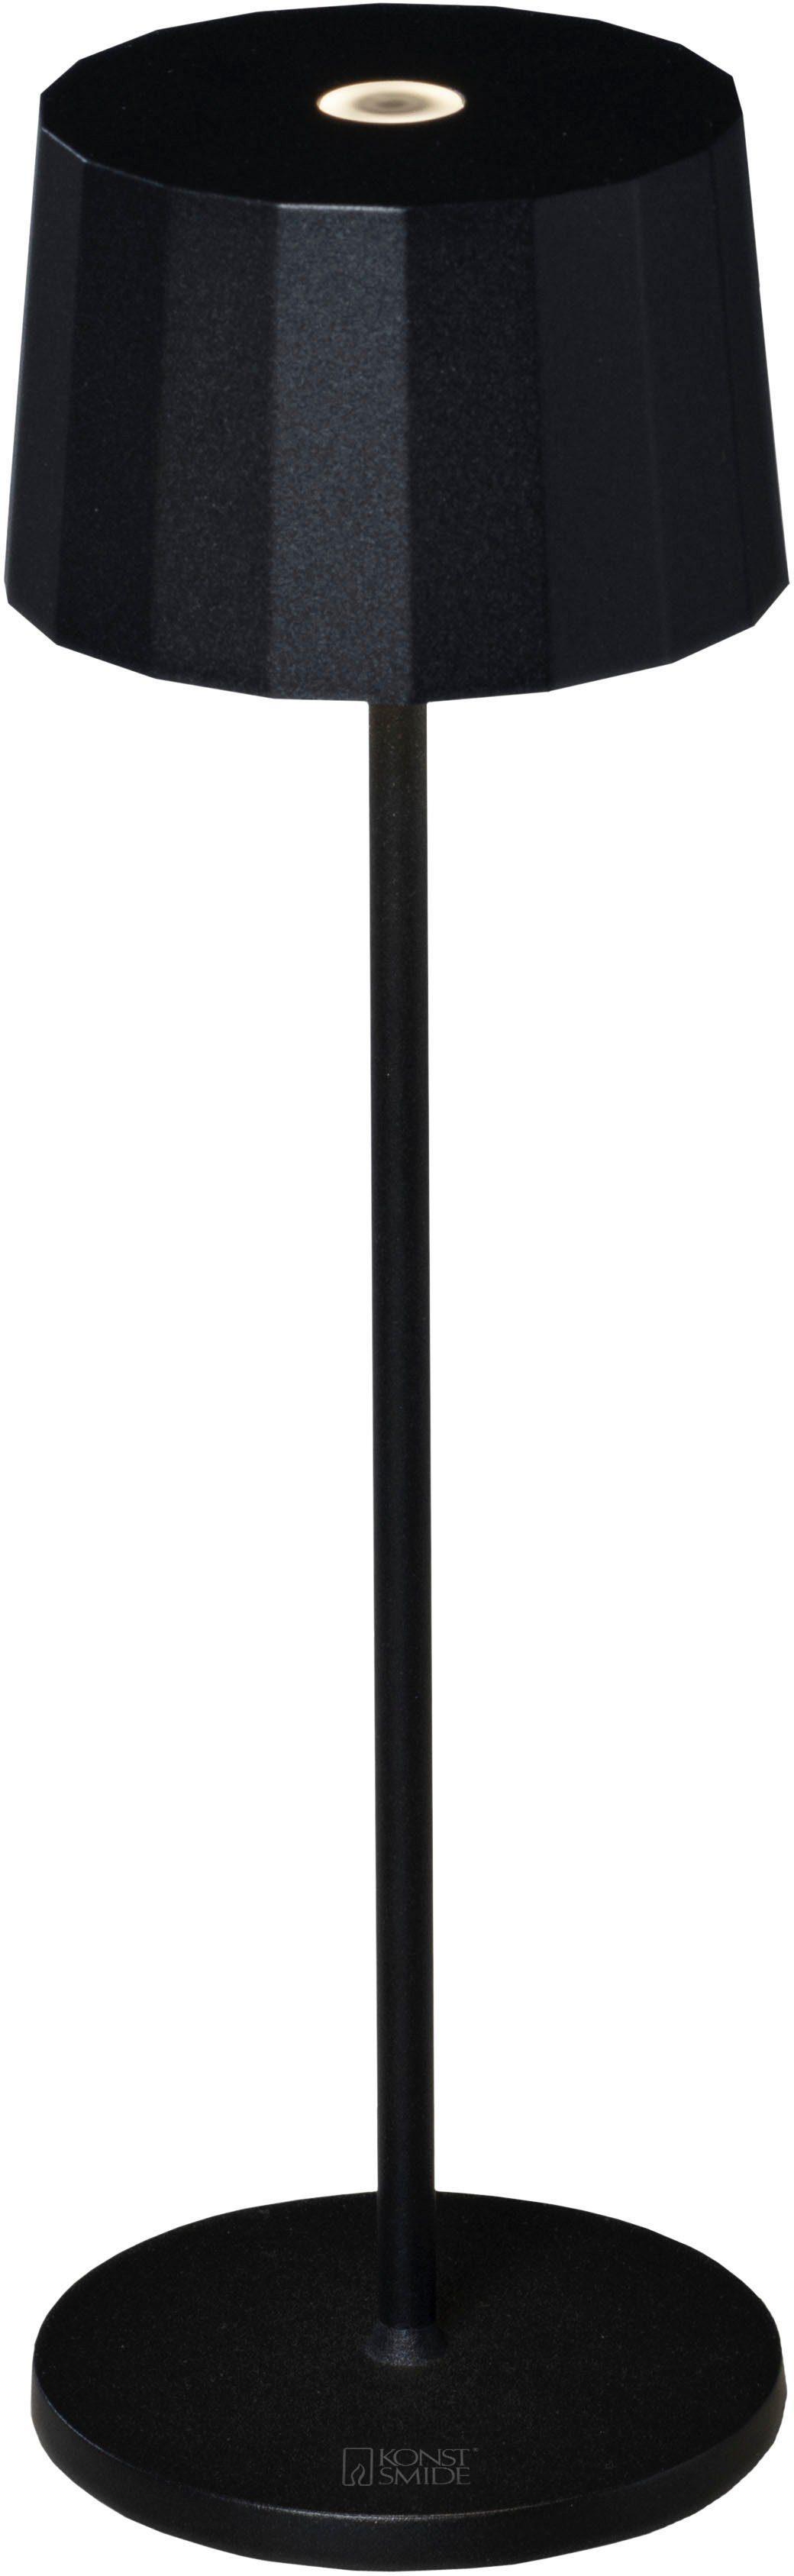 KONSTSMIDE LED Tischleuchte Positano, LED fest integriert, Warmweiß, Positano LED USB-Tischleuchte schwarz, Farbtemperatur, dimm | Tischlampen